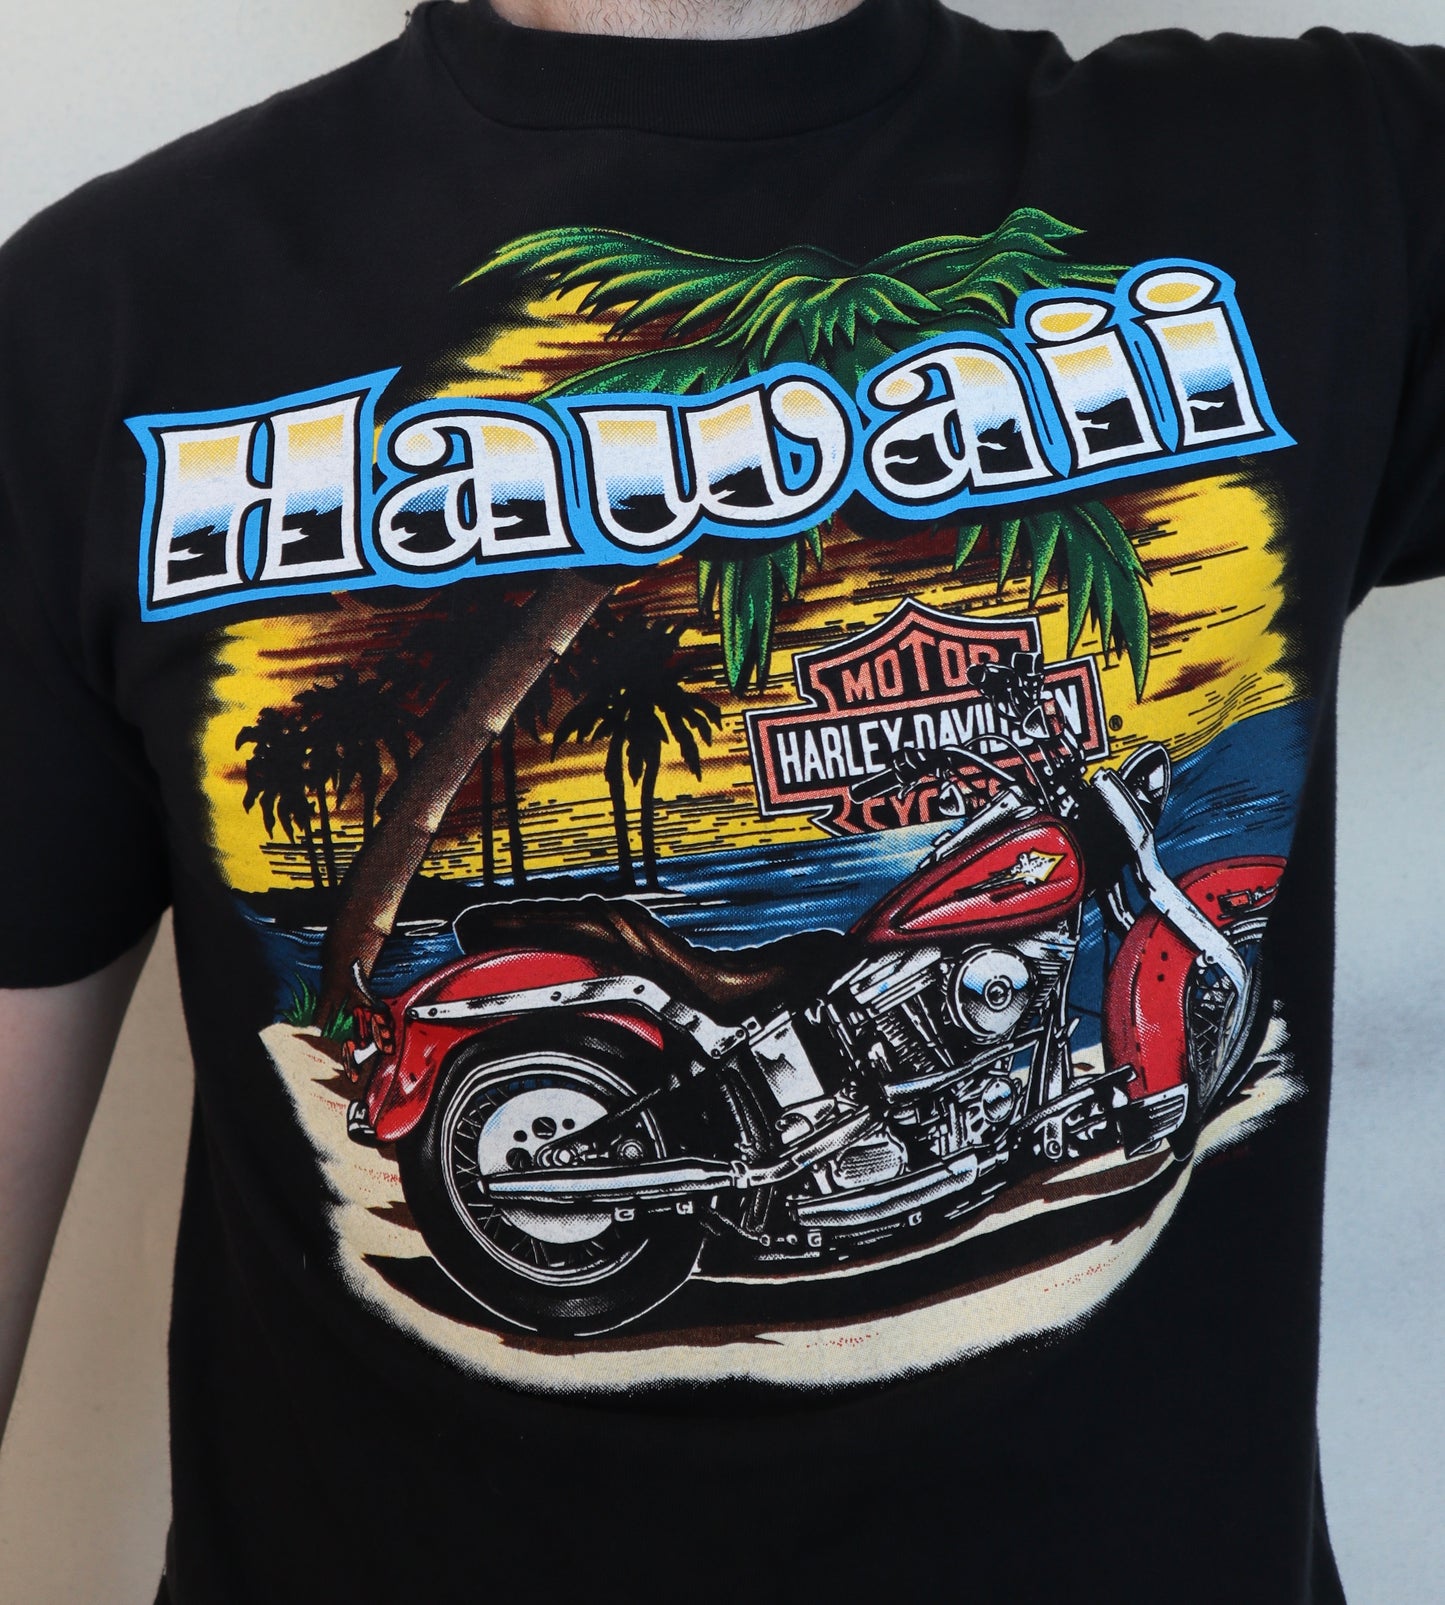 Harley Davidson Honolulu,Hawaii tee